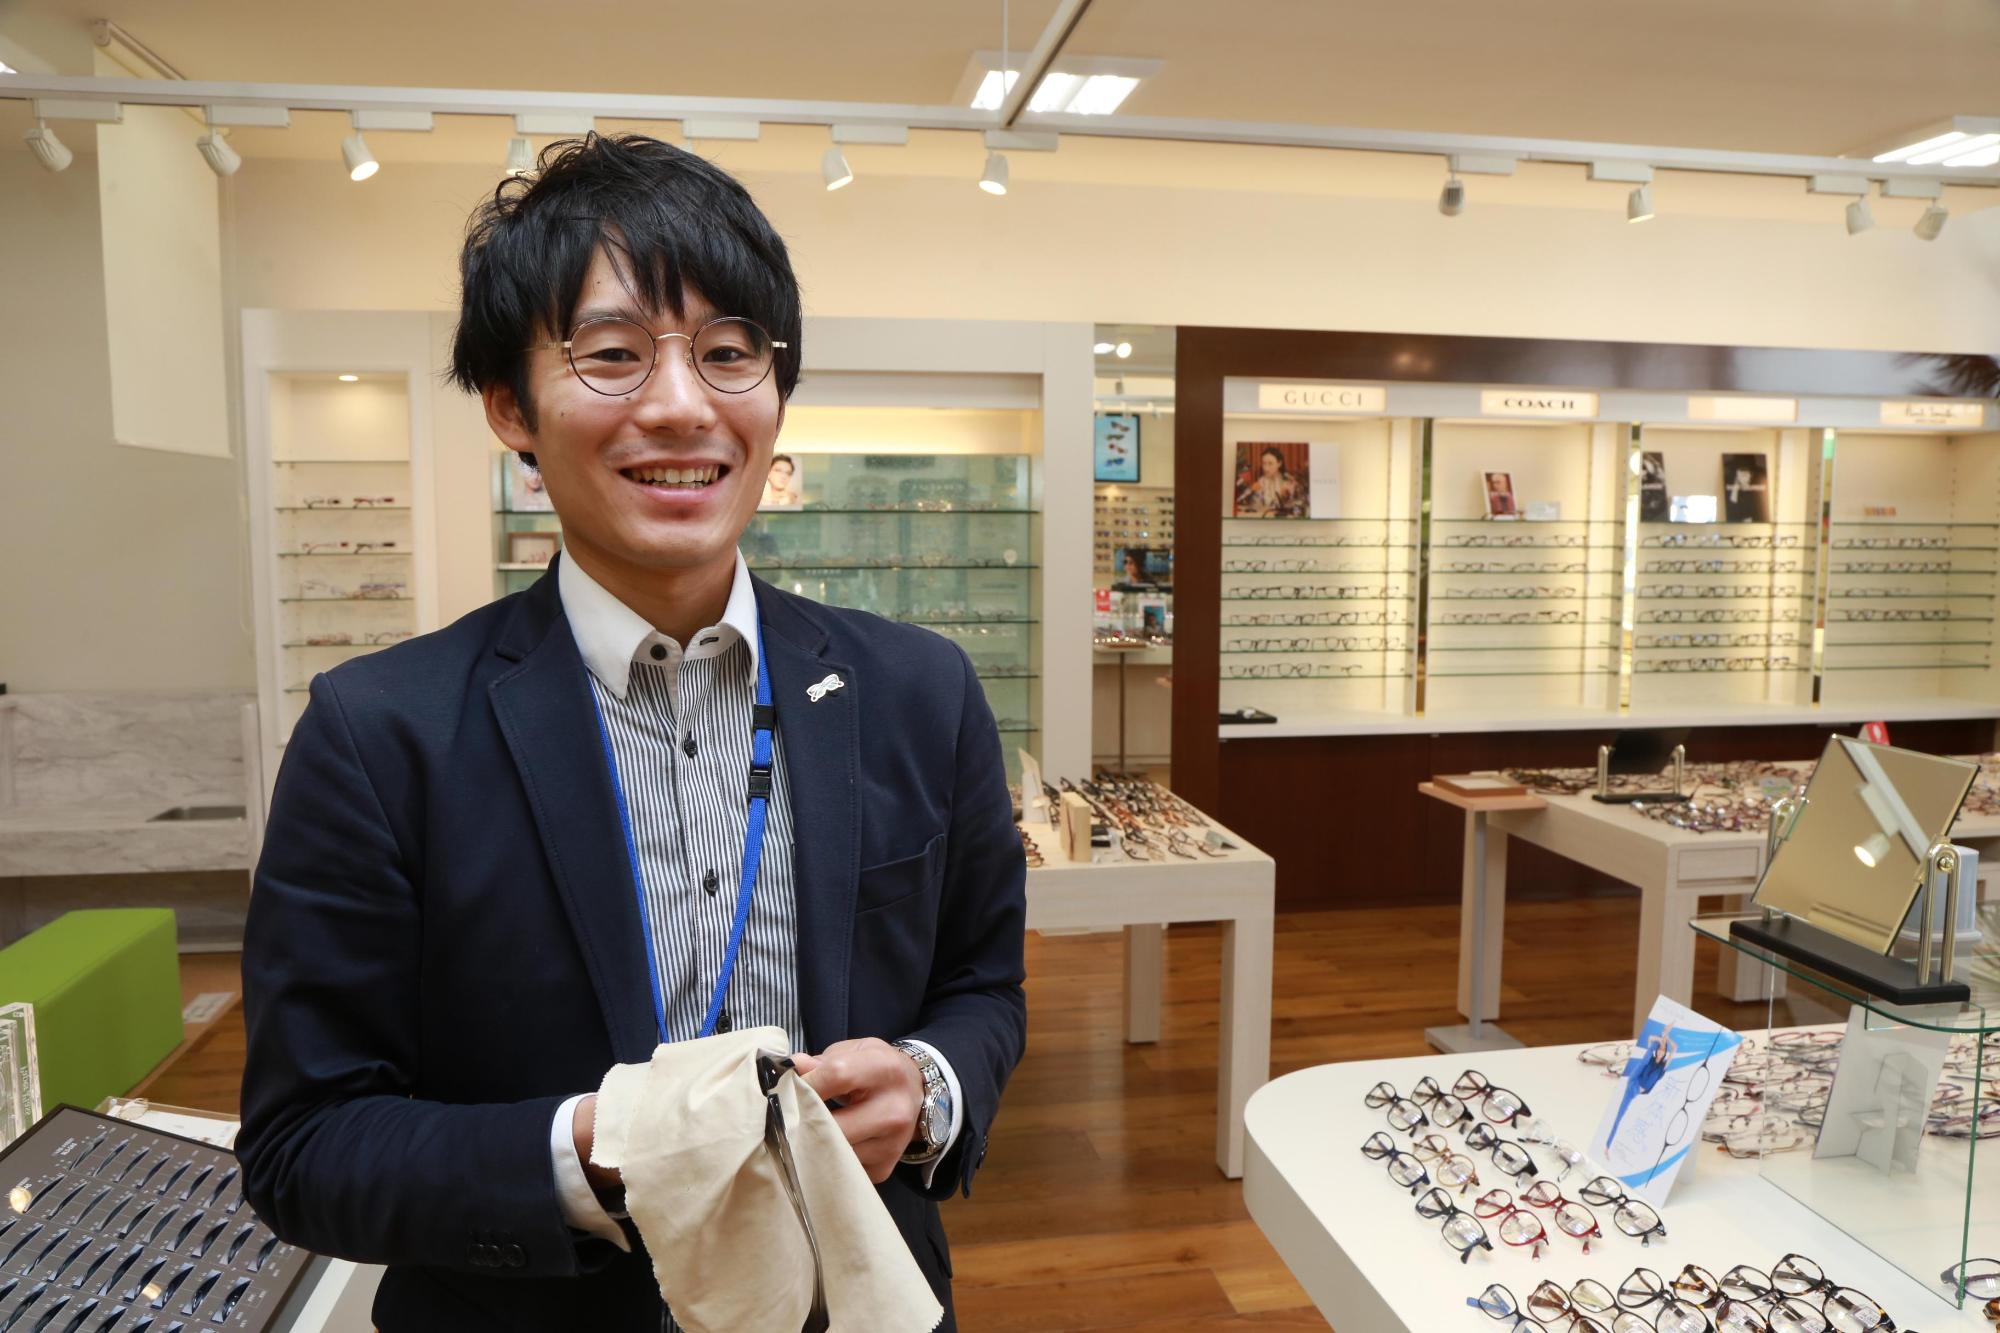 眼鏡が陳列されている机とともに写る笑顔の高橋雅人さんの写真